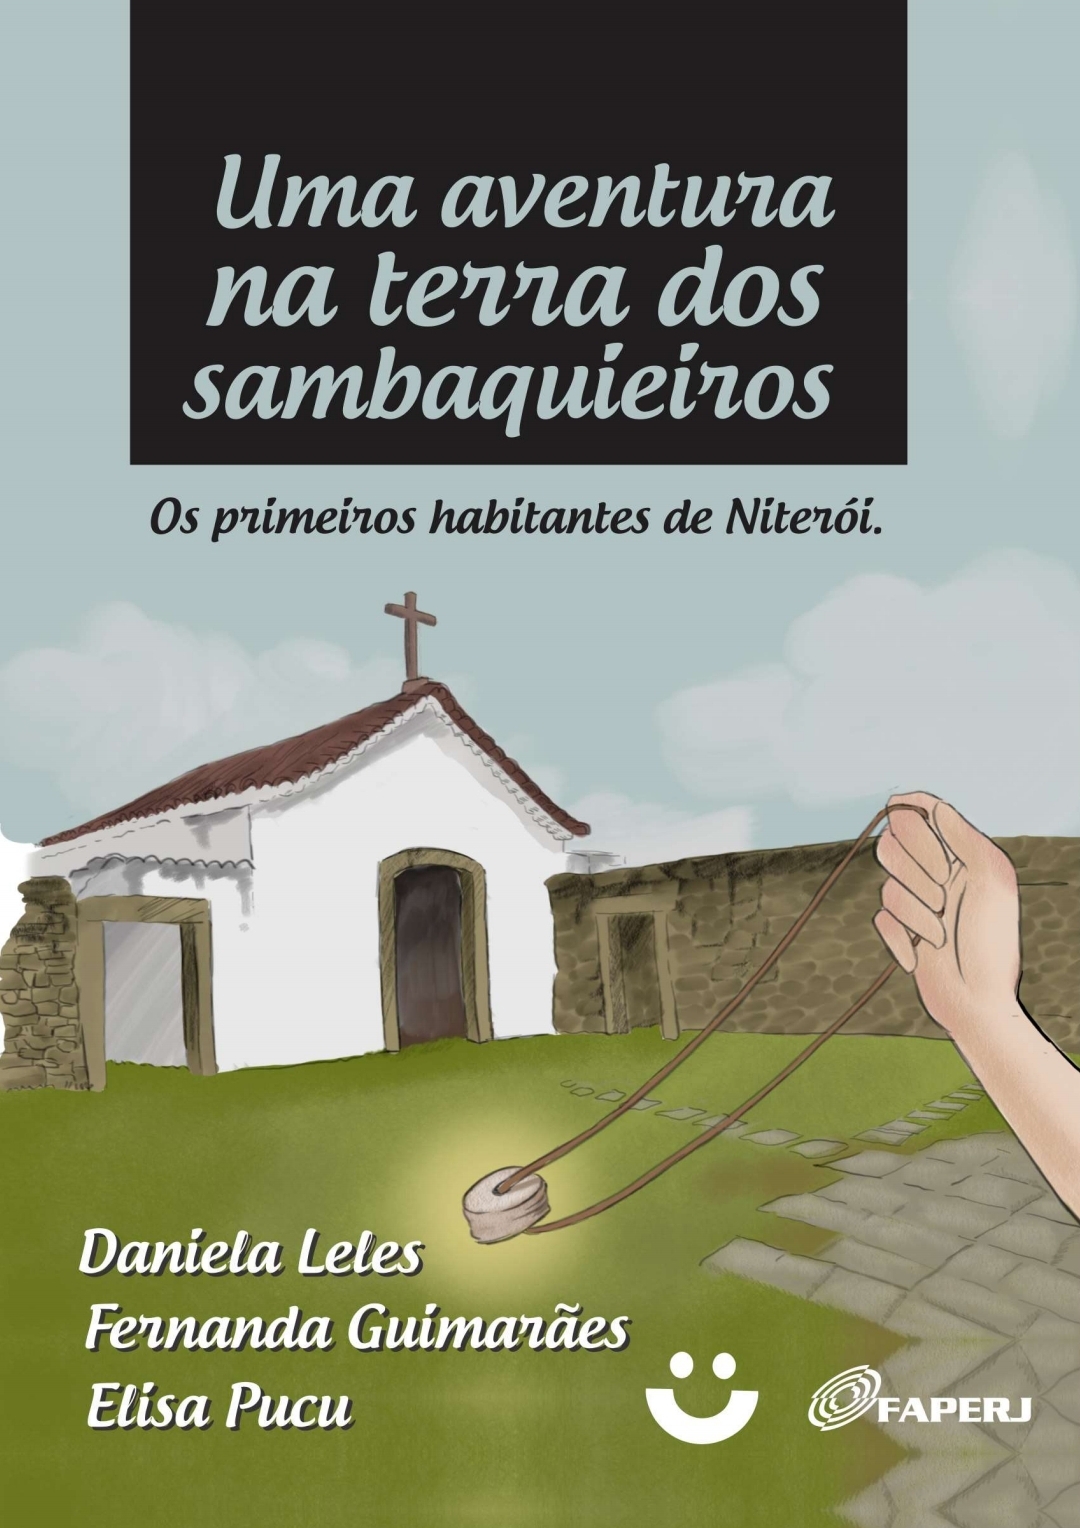 Uma aventura na terra dos “sambaquieiros”, os primeiros habitantes de Niterói